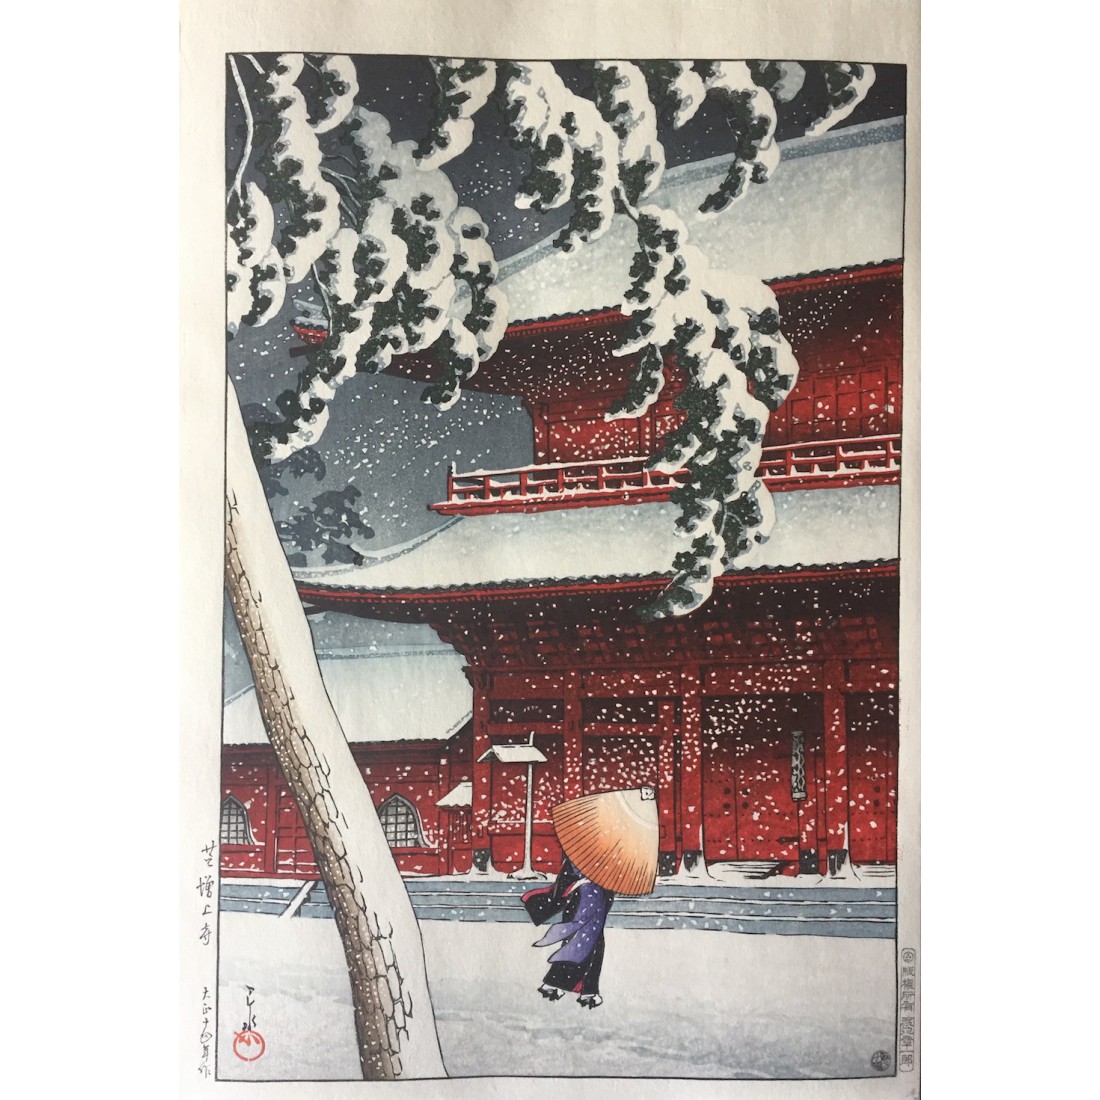 Le tmple zojo-ji shiba sous la neige